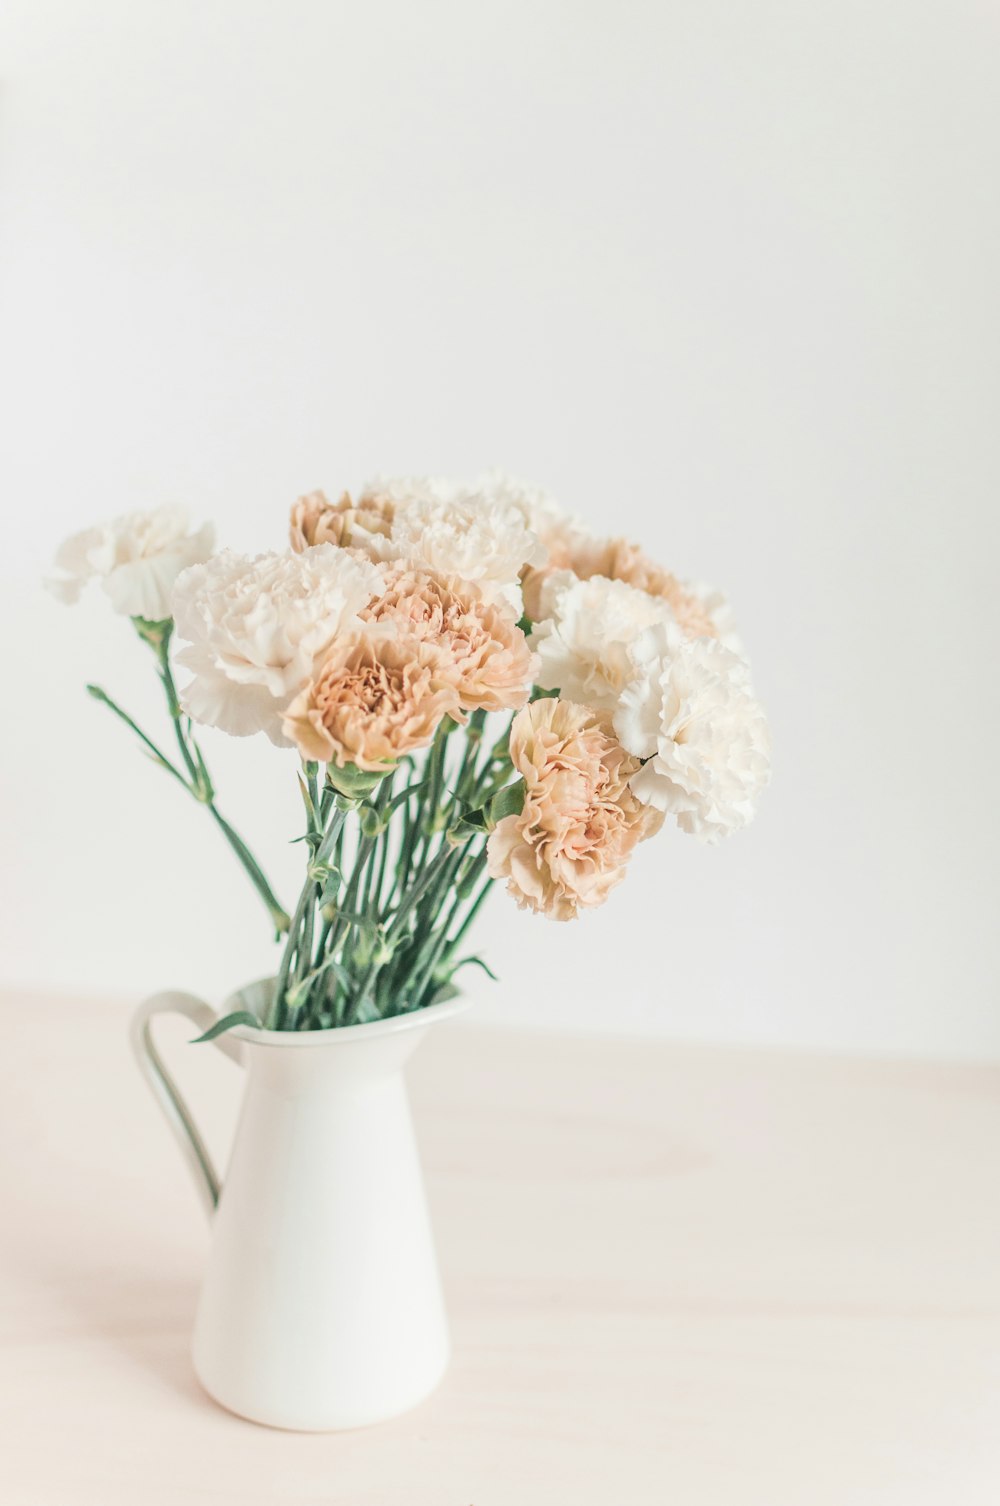 flores blancas y beige en una jarra blanca